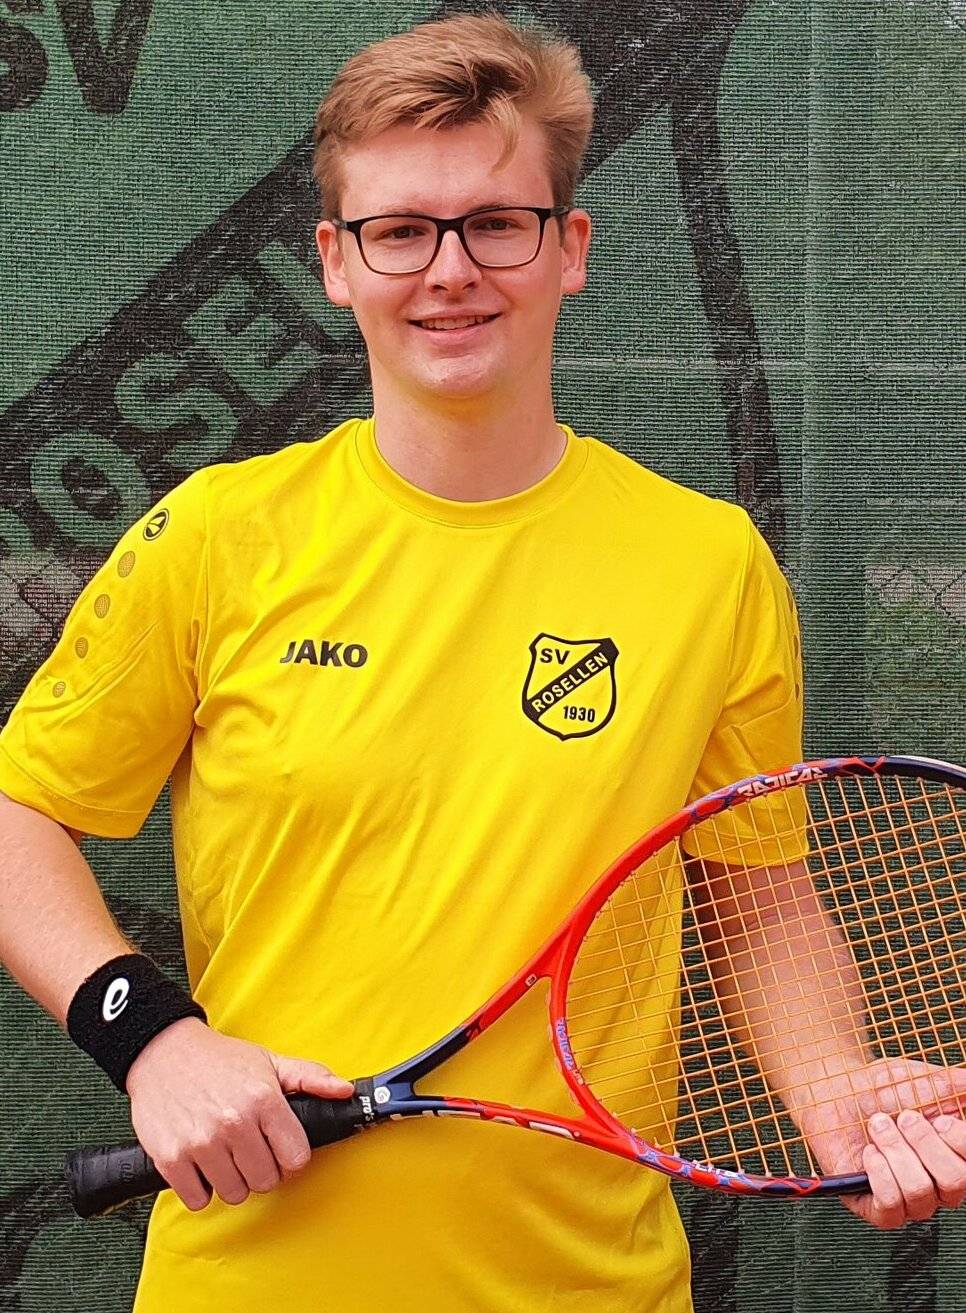  Lennart Meier von der Tennisabteilung des SV Rosellen. 
  